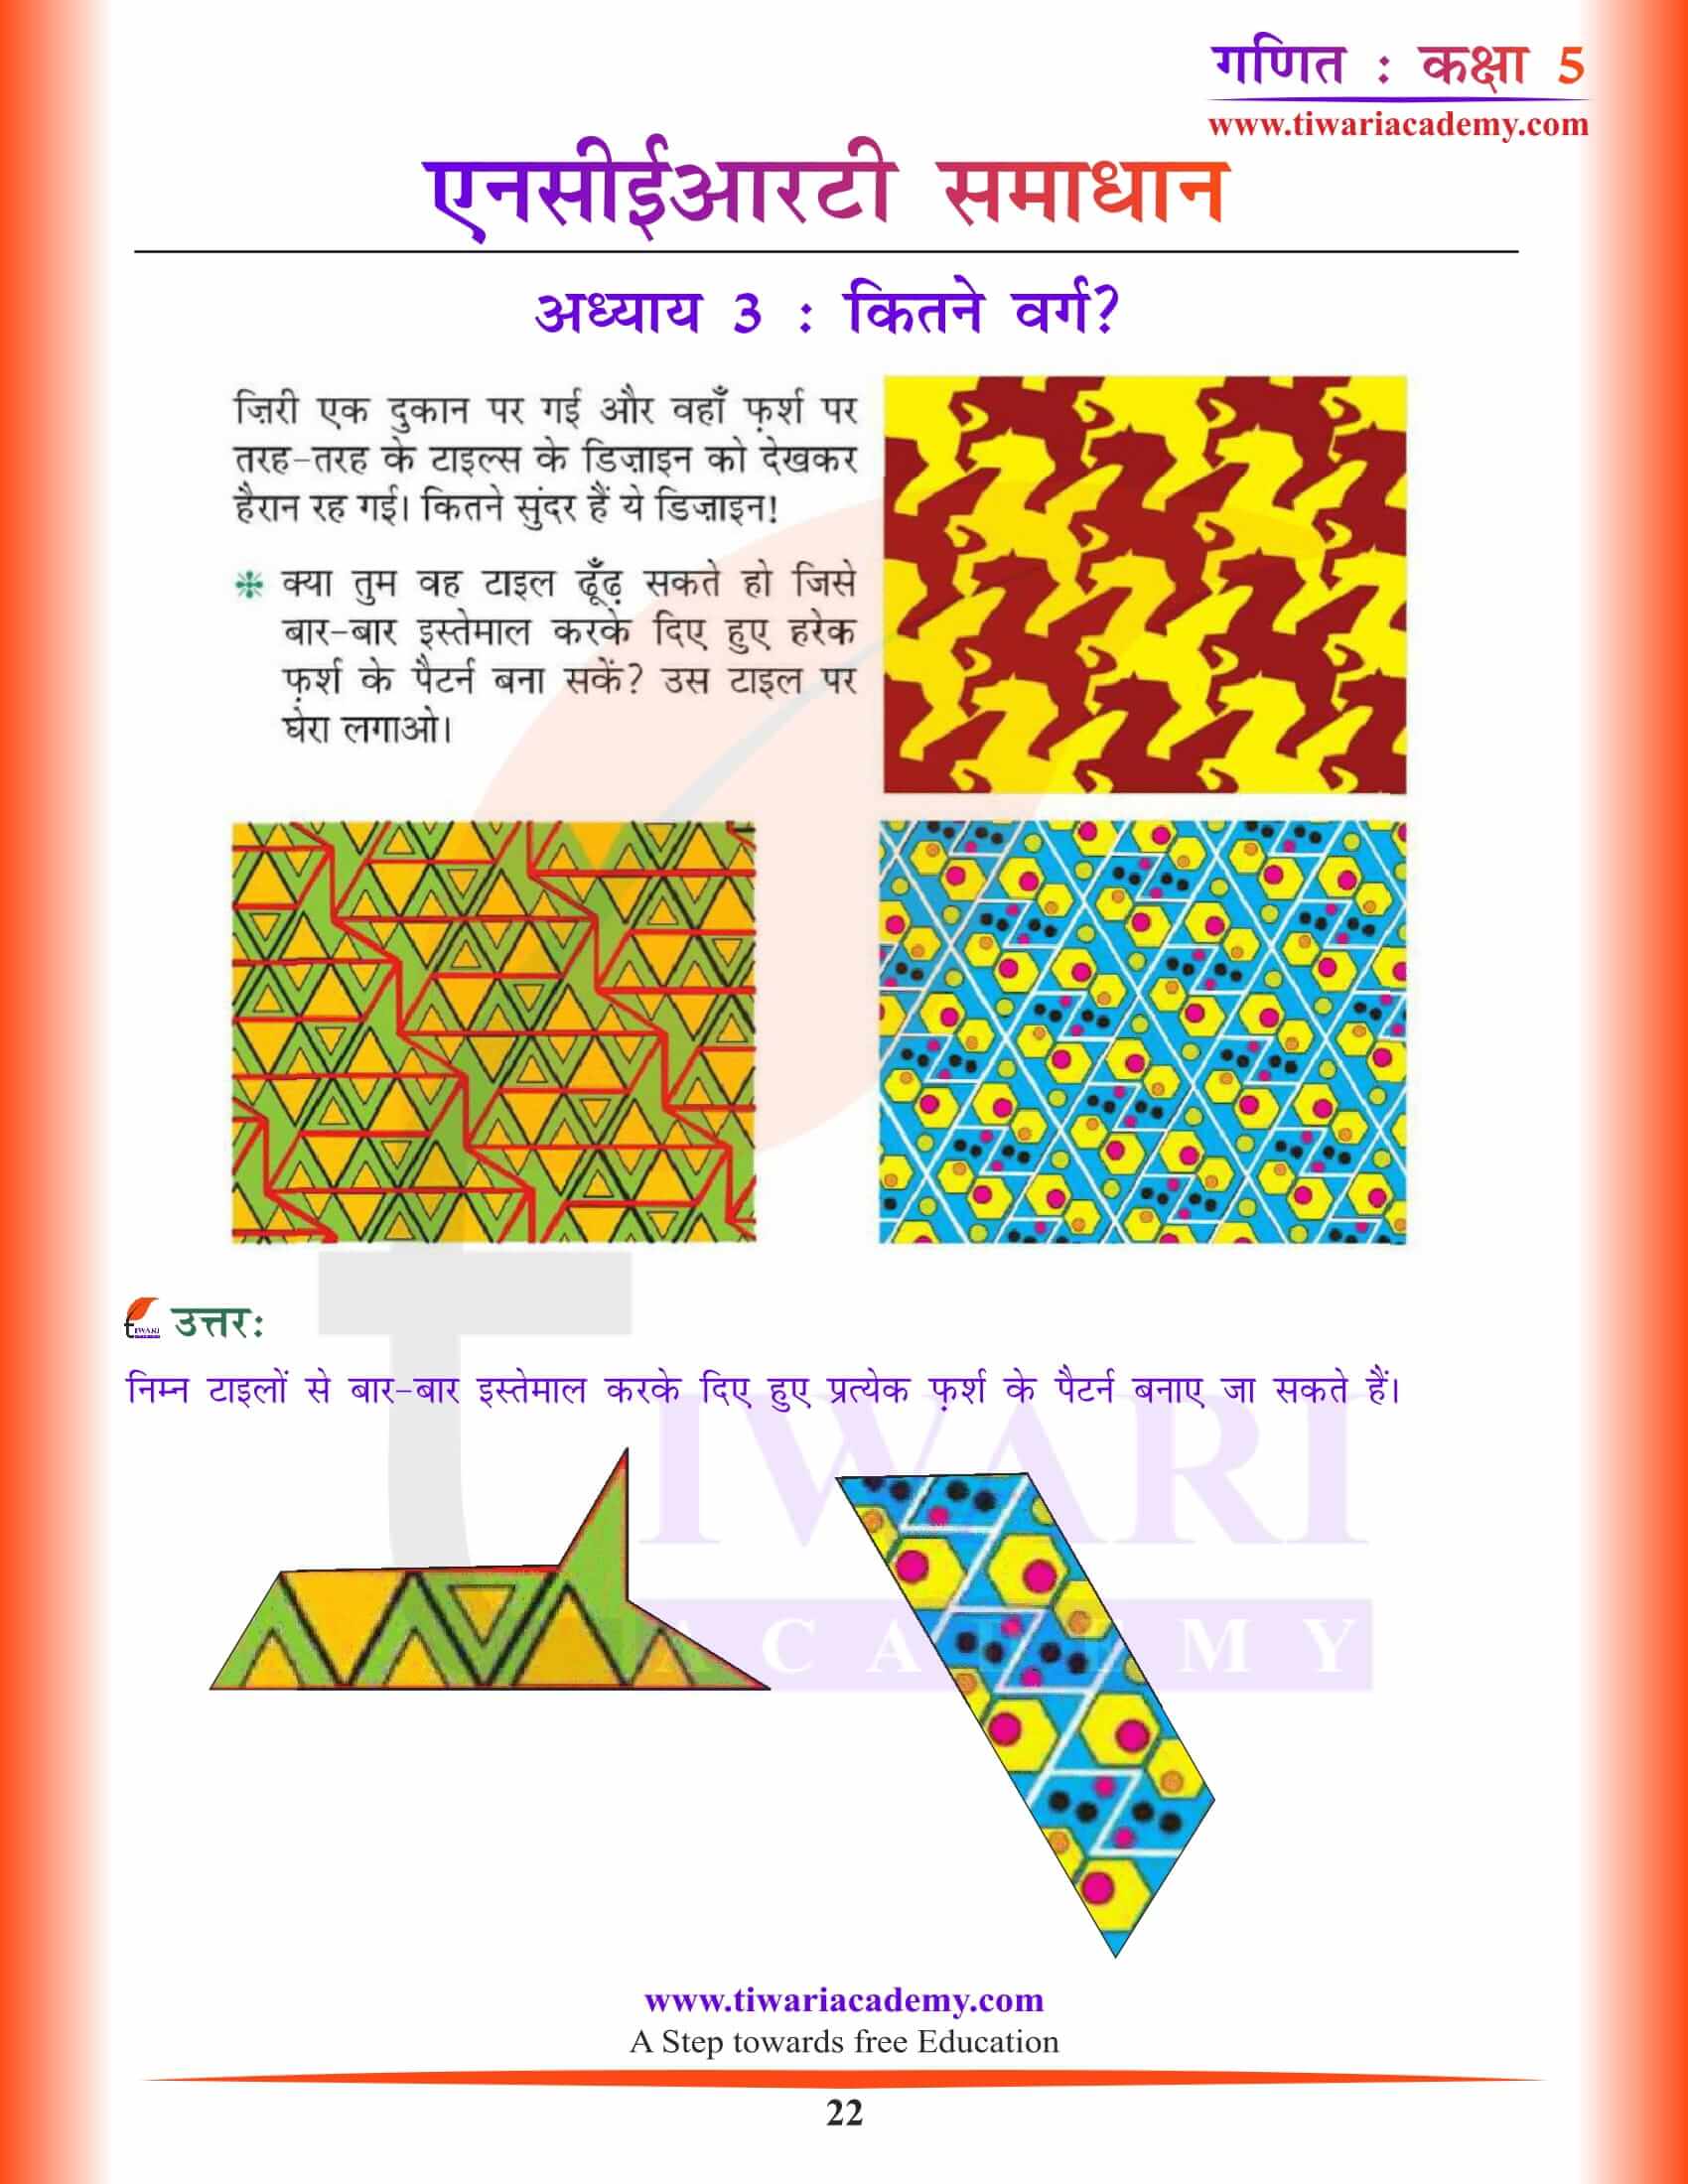 कक्षा 5 गणित अध्याय 3 के हल हिंदी में